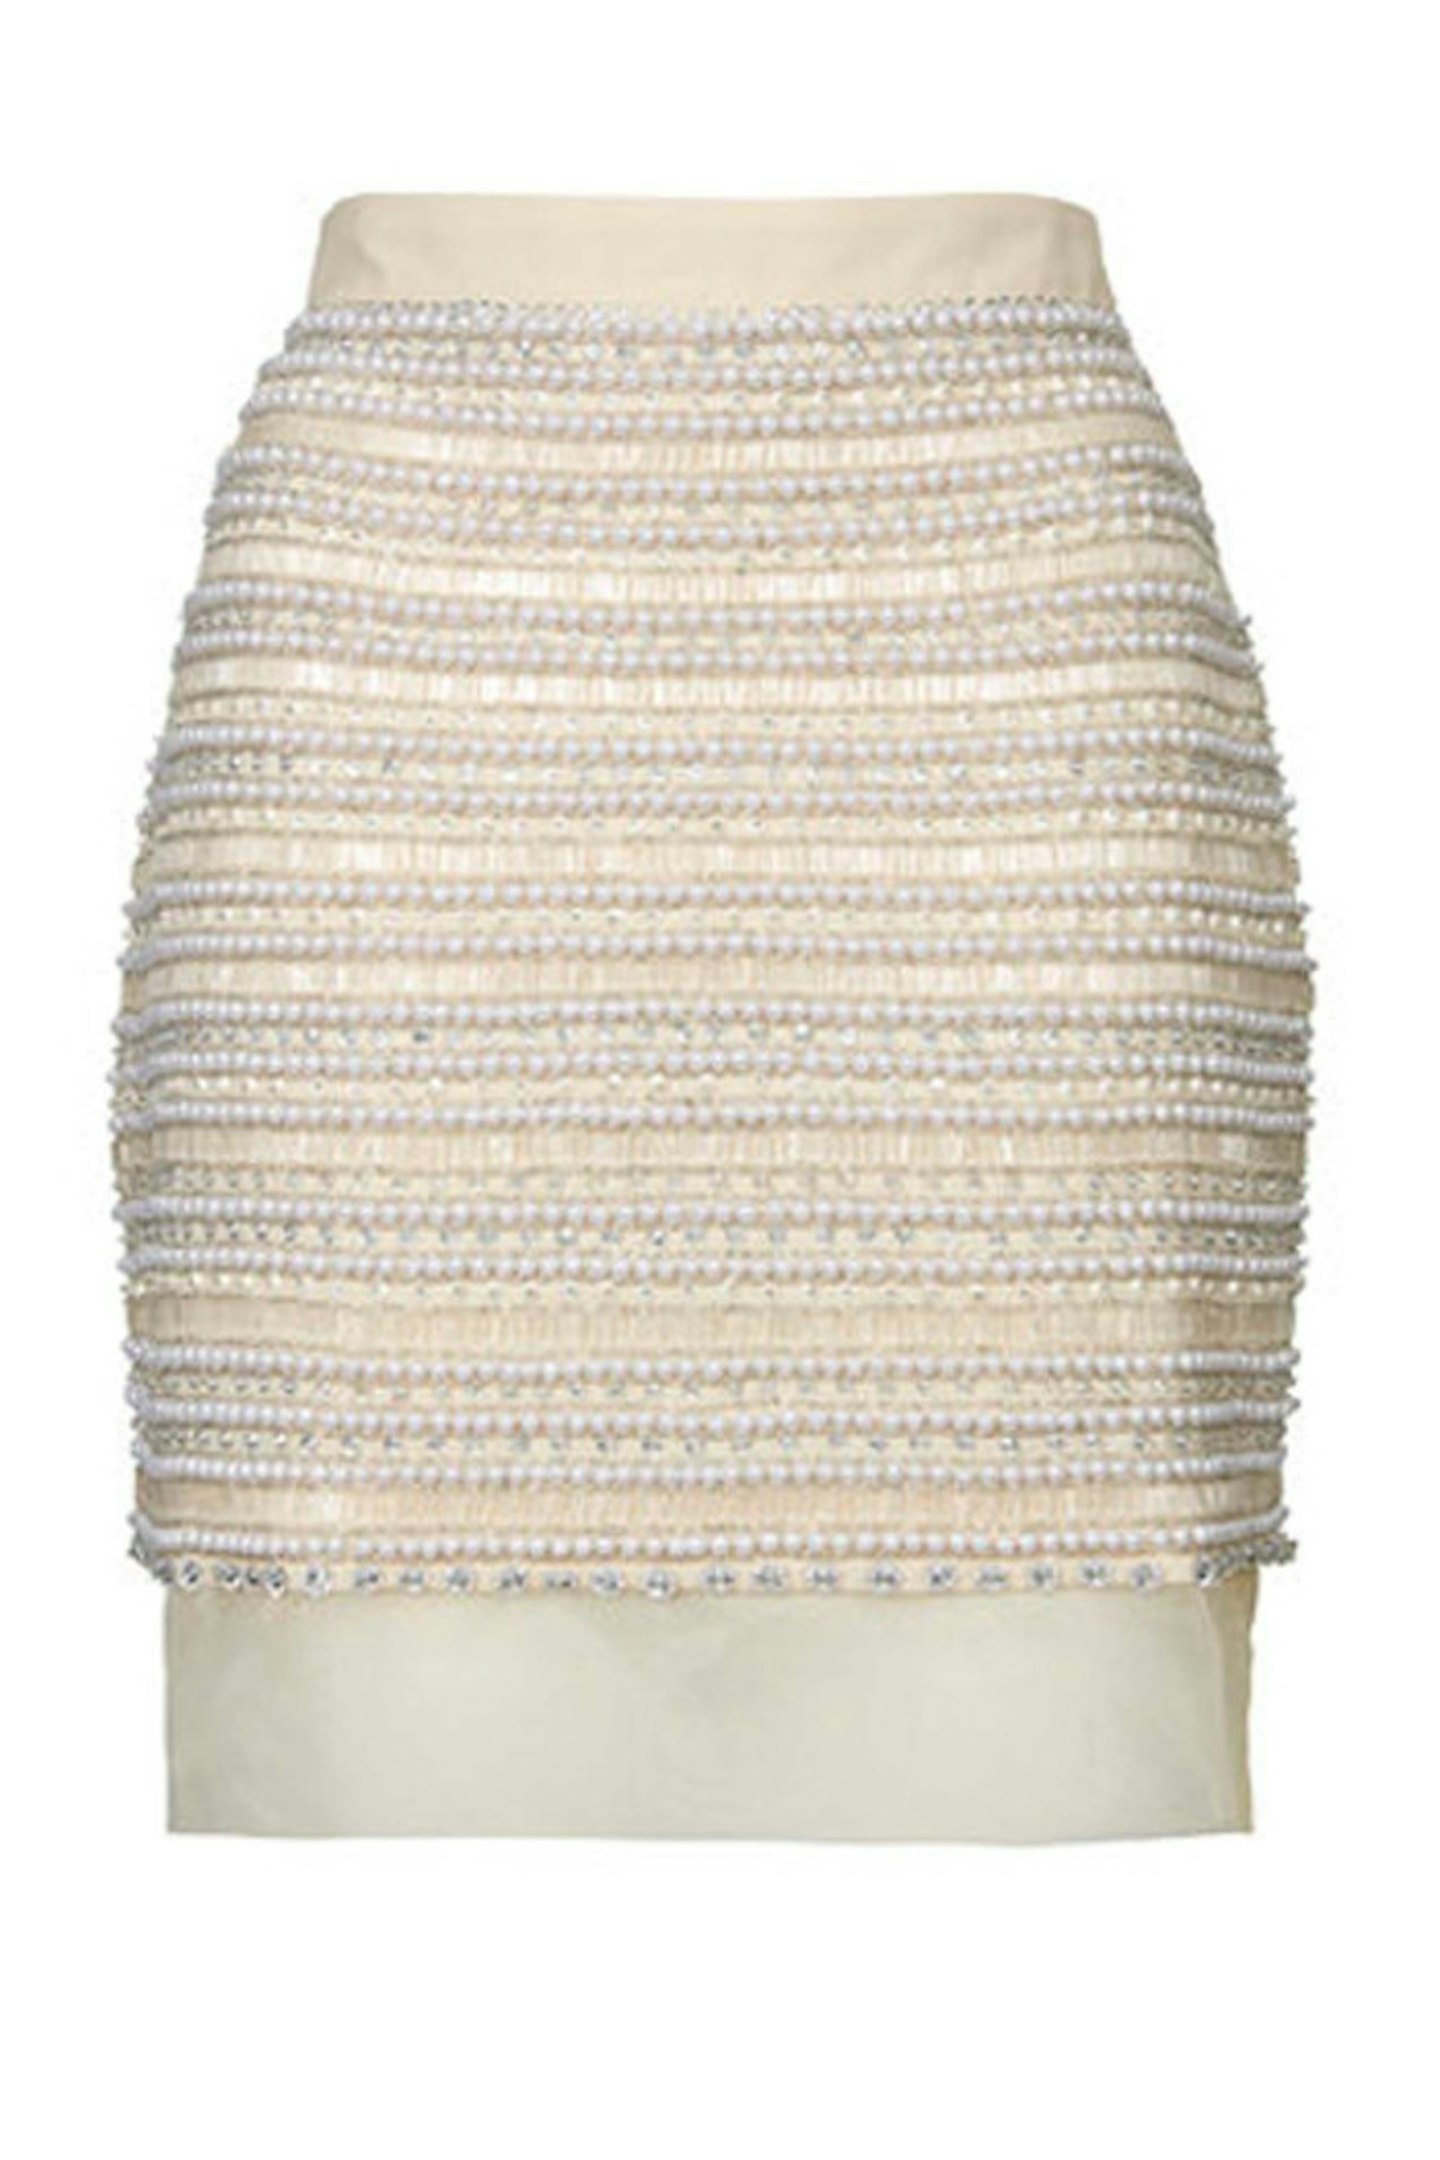 41. Pearl embellished skirt, £135, Topshop